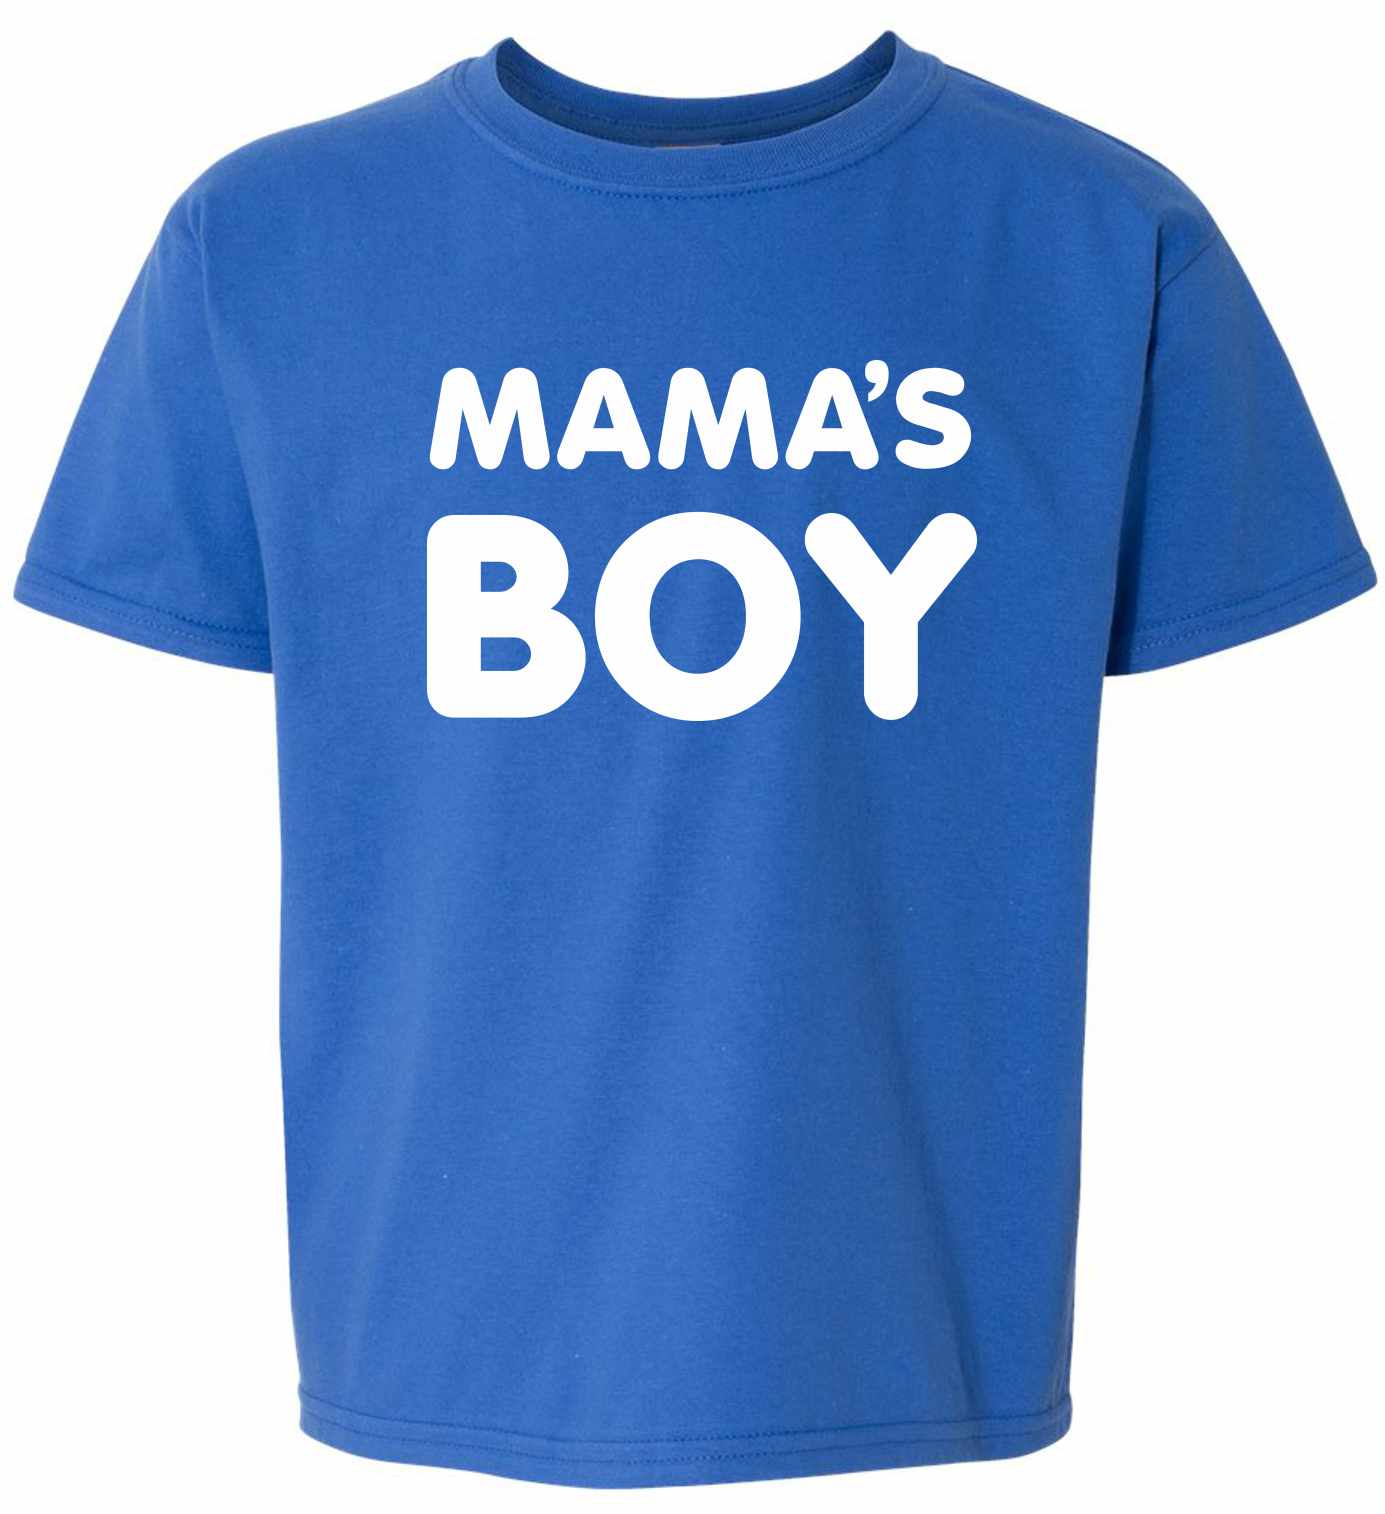 MAMA'S BOY on Kids T-Shirt